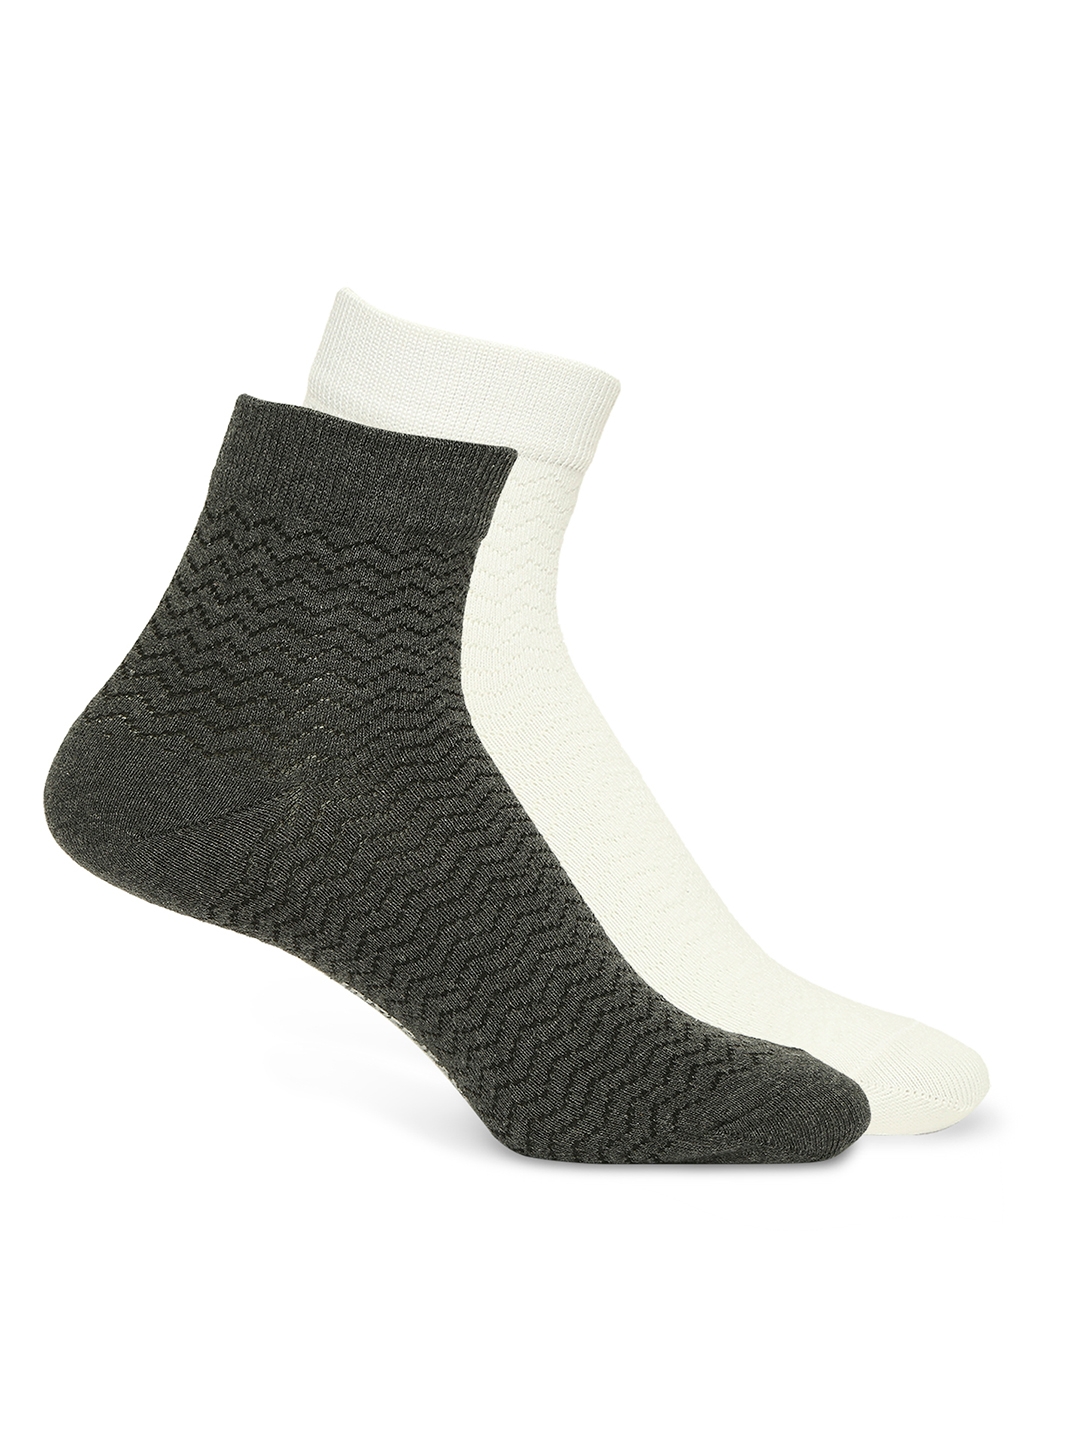 spykar | Underjeans by Spykar Premium White & Anthra Melange Ankle Length Socks - Pack Of 2 0